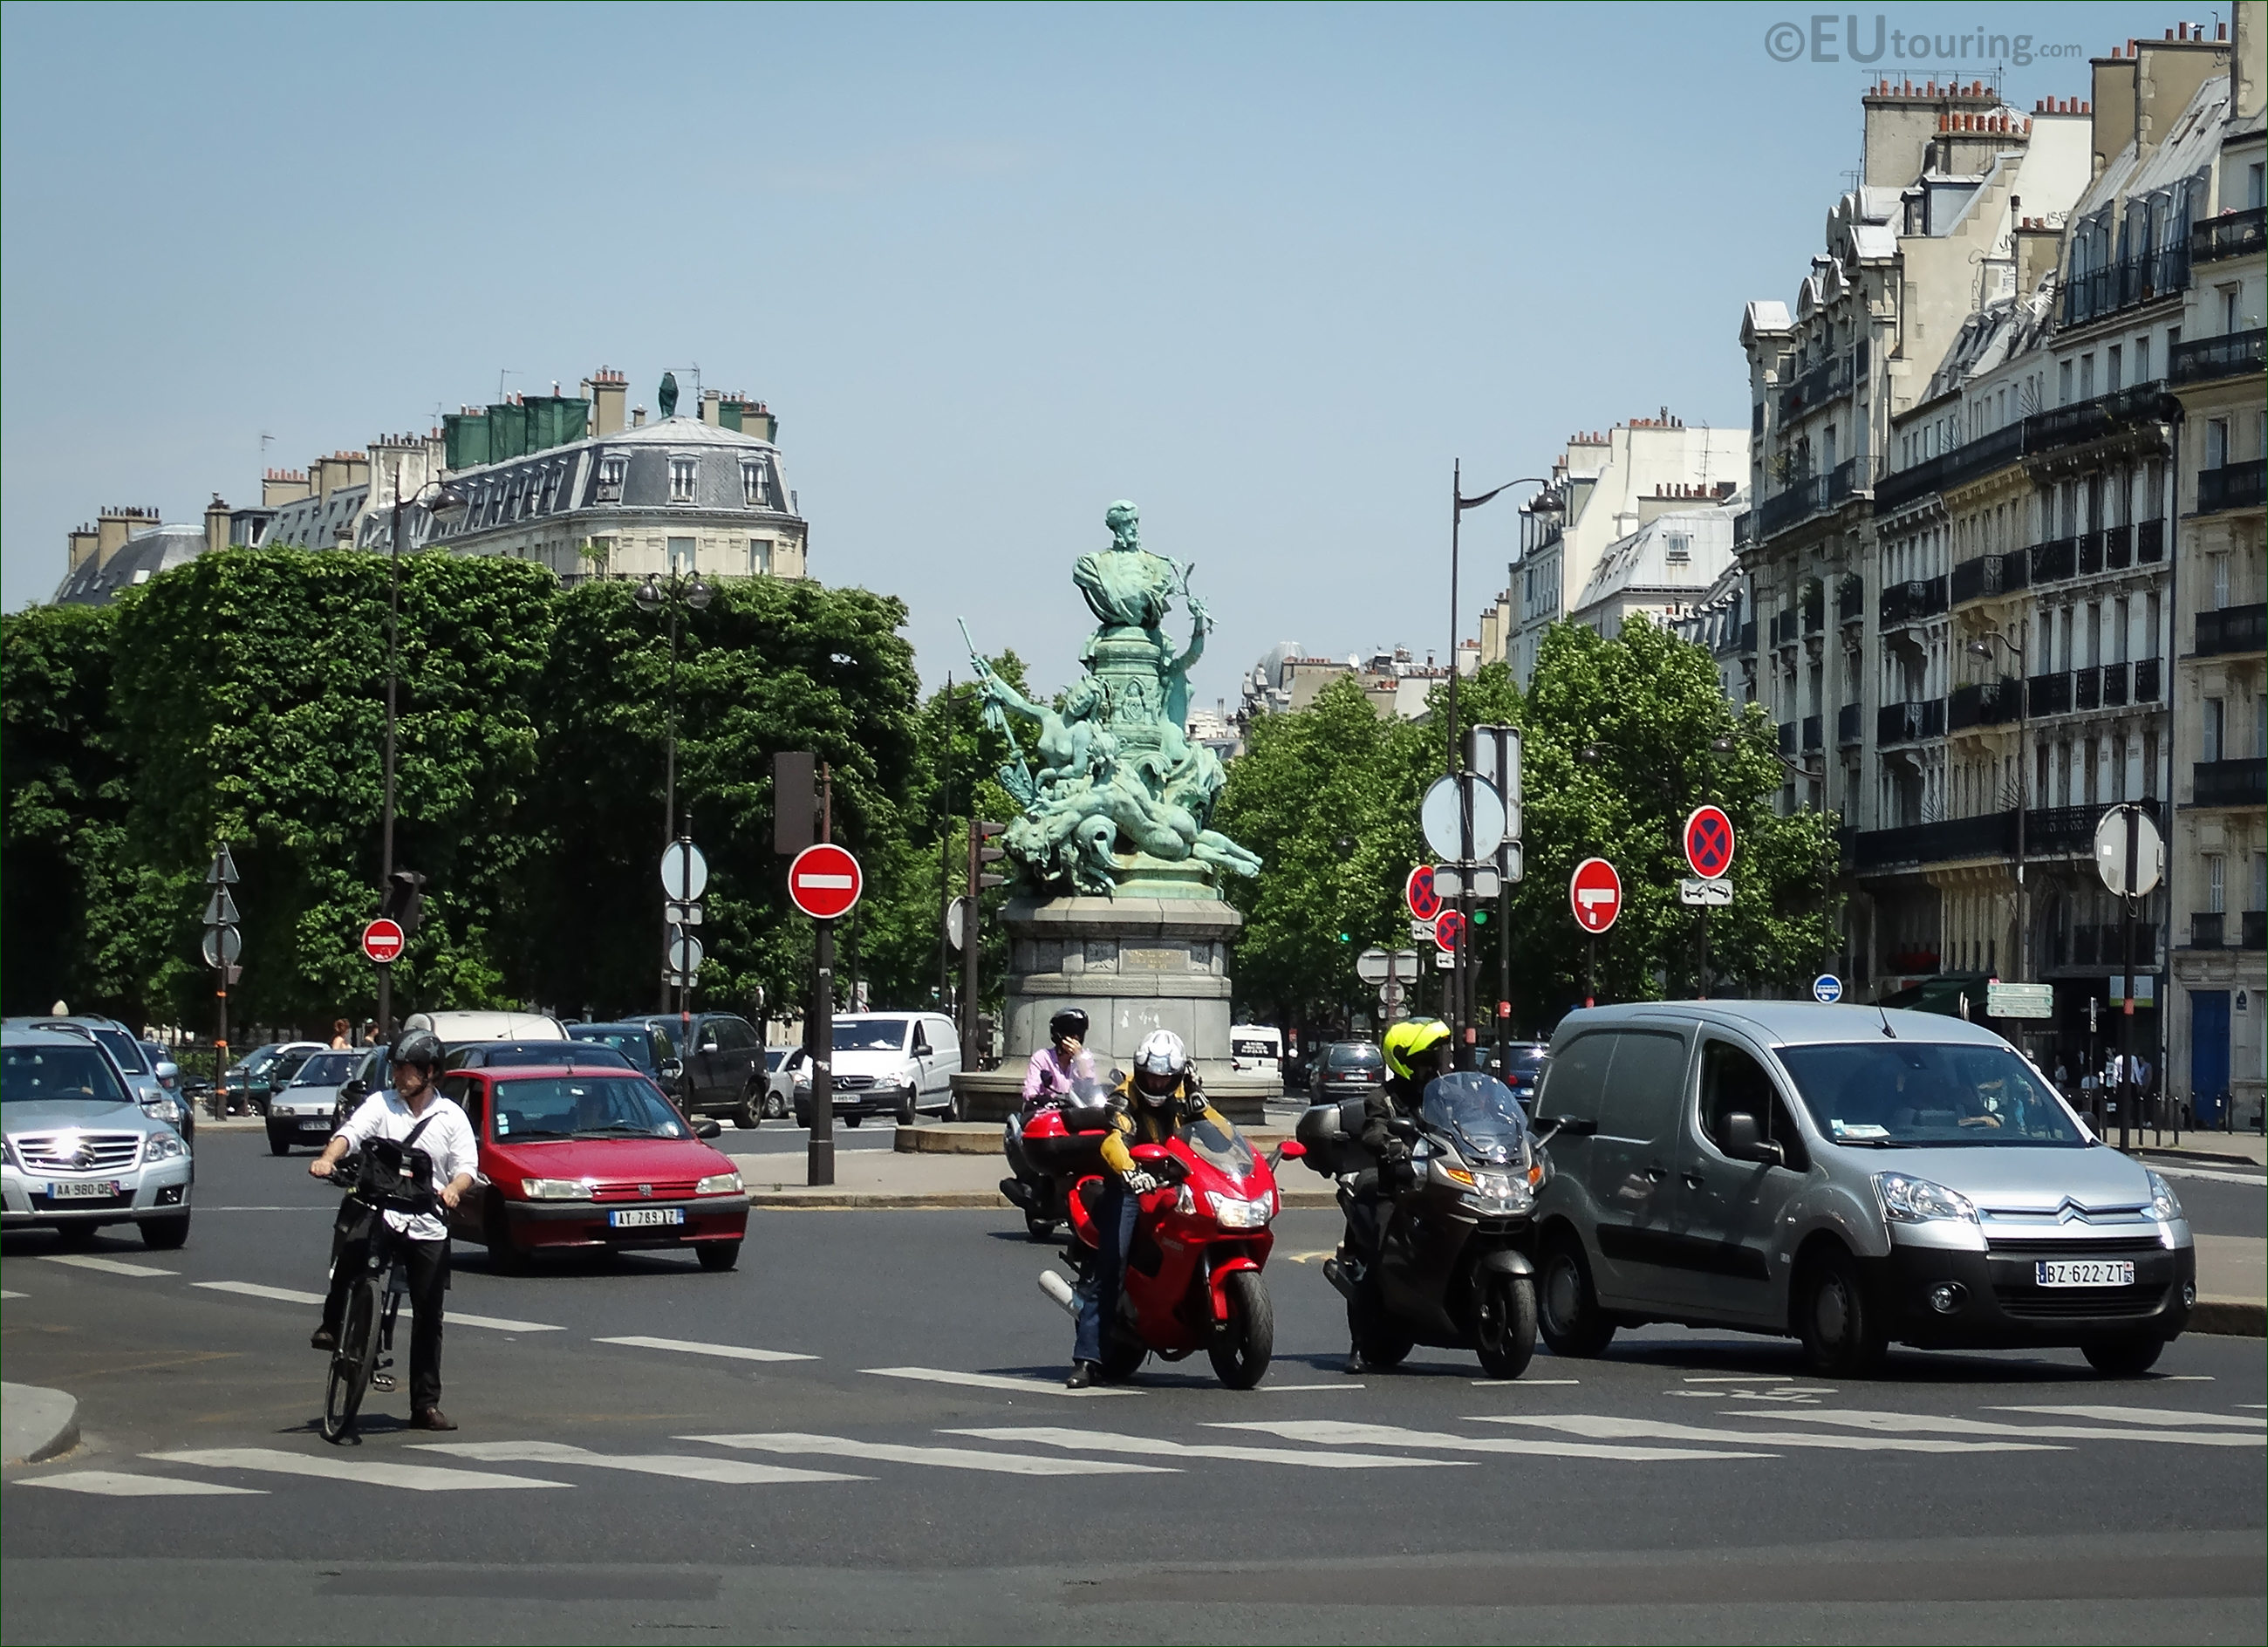 Photos of Francois Garnier monument in Paris by D Puech.